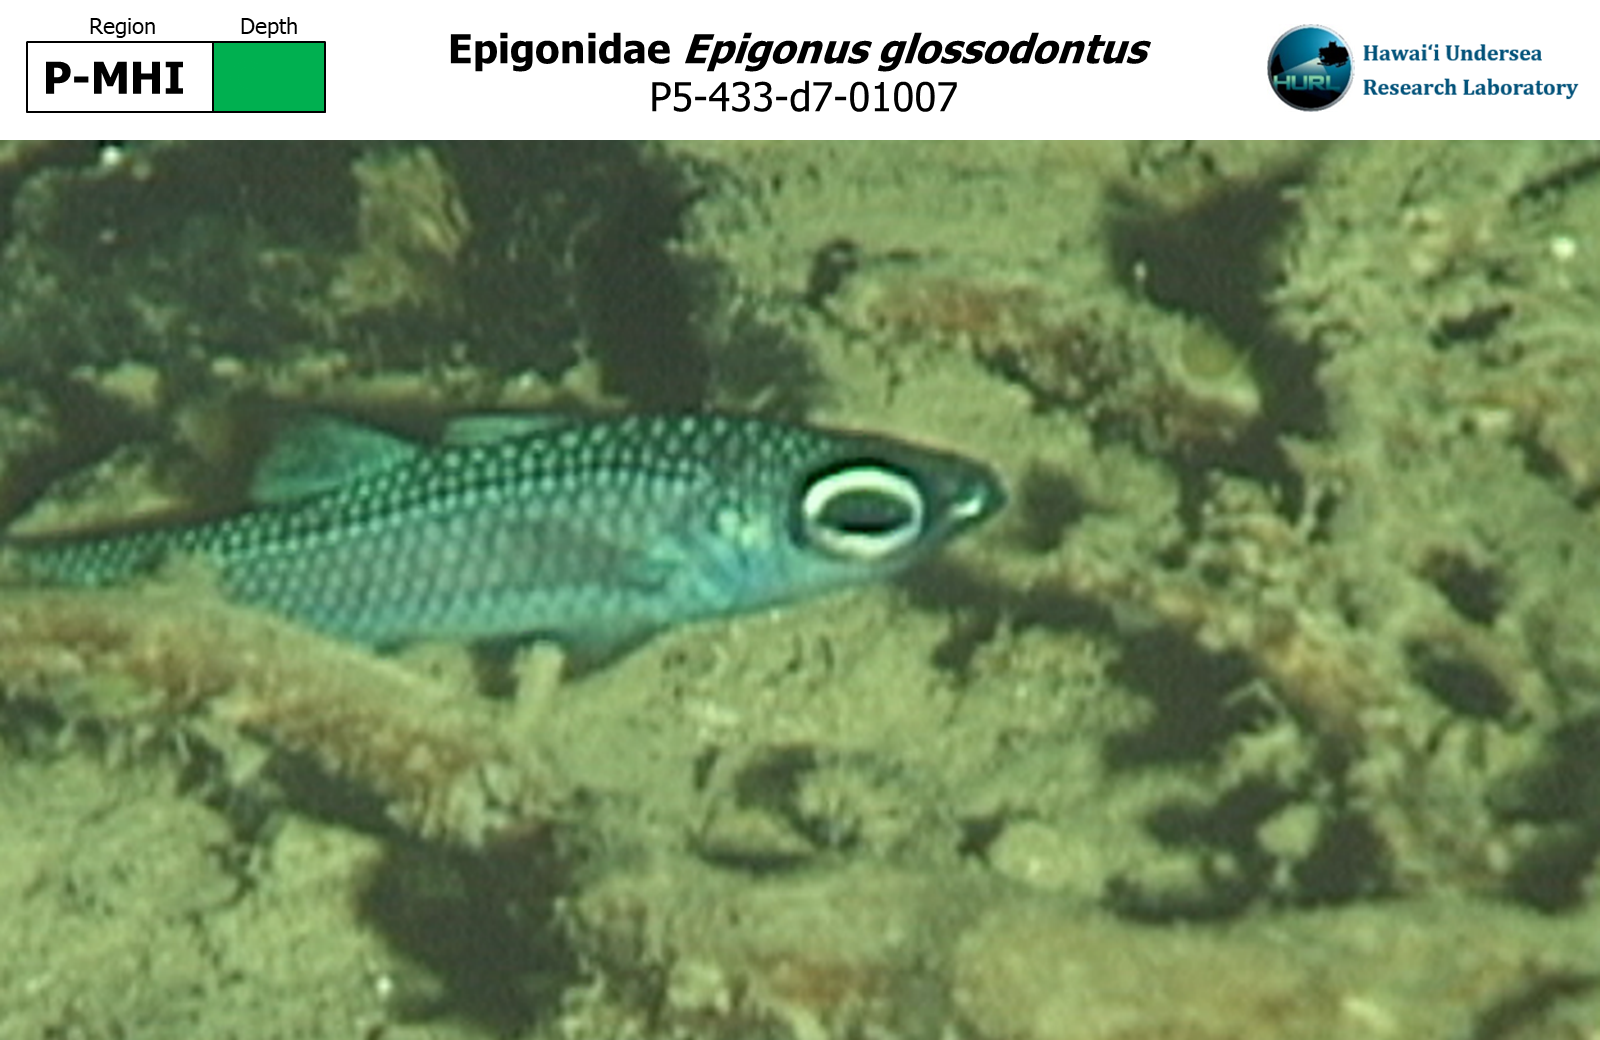 Epigonus glossodontus